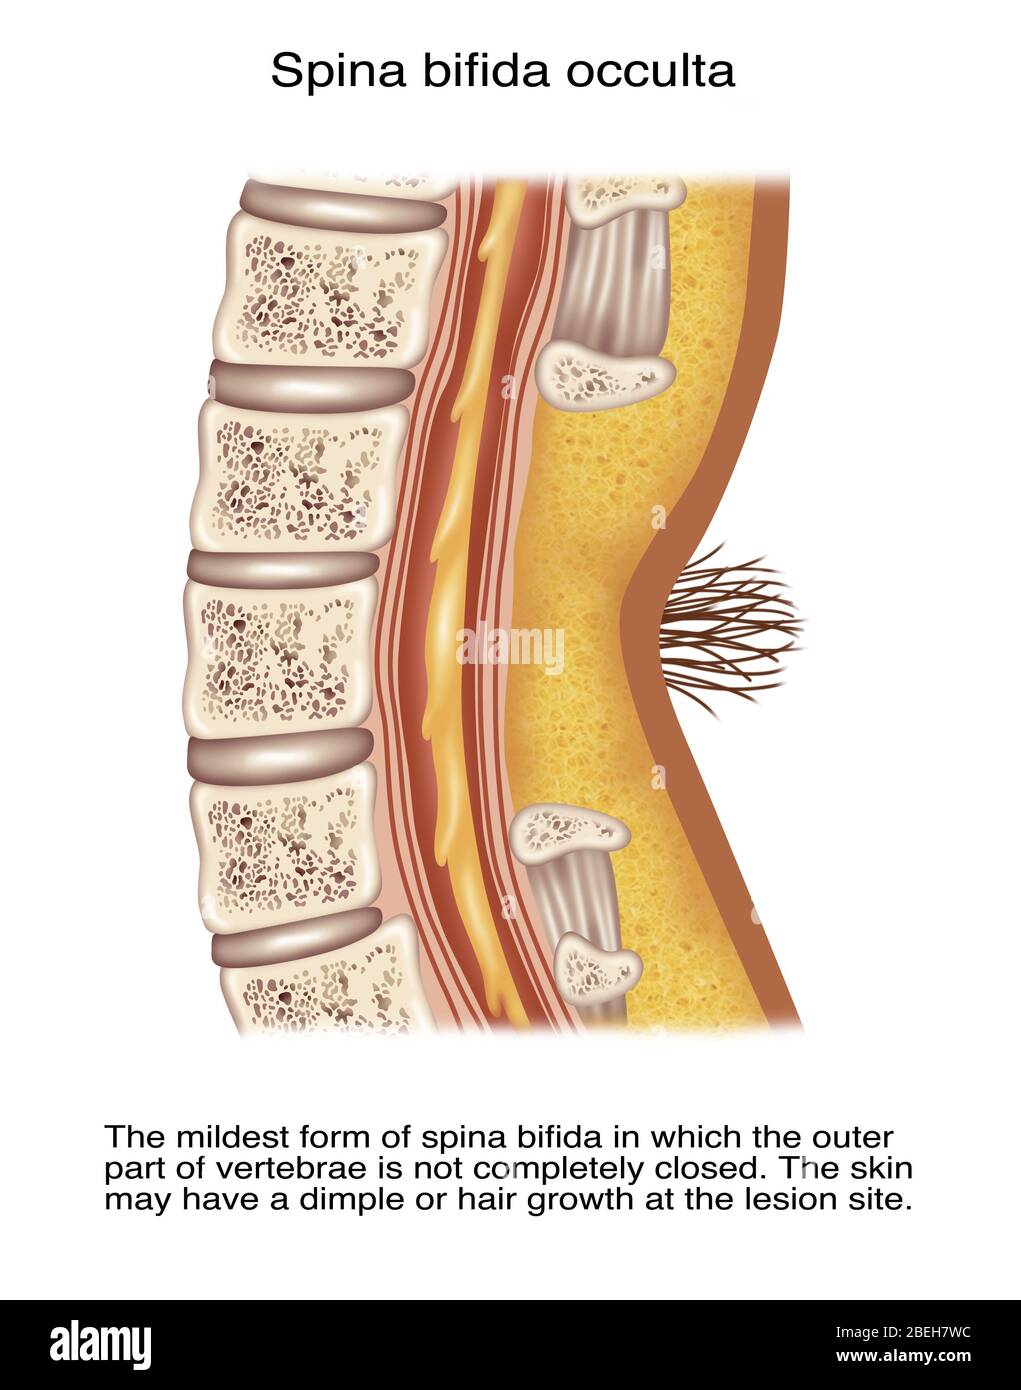 spina bifida occulta x ray